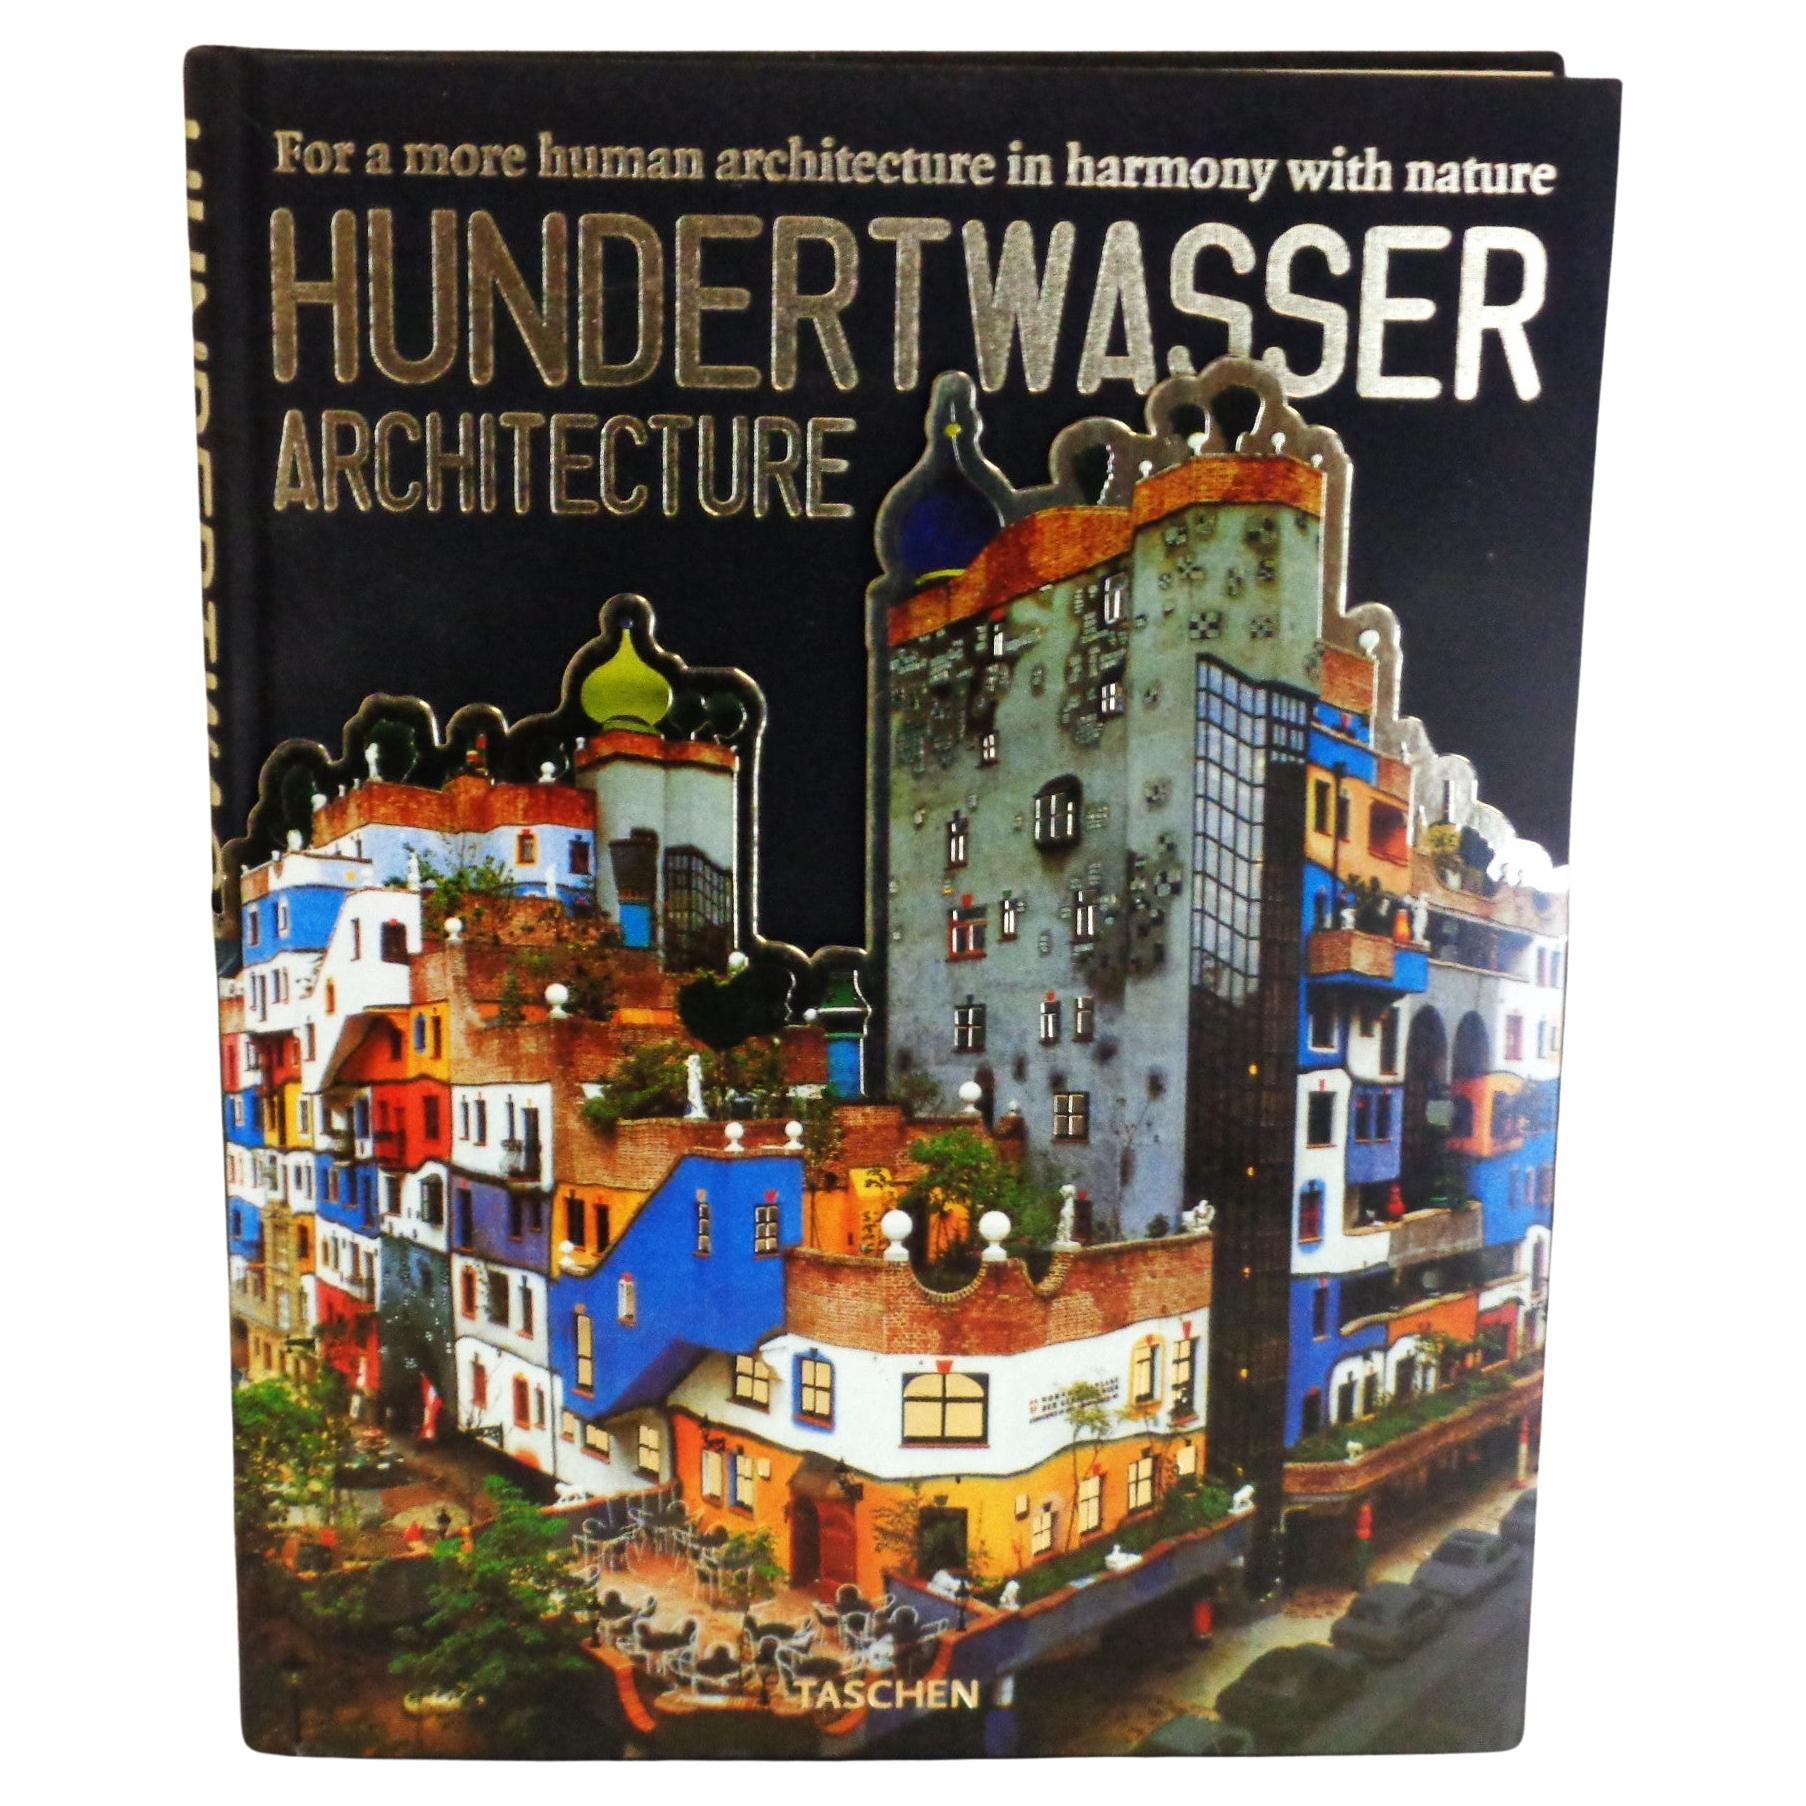 Hundertwasser Architektur - 1997 Taschen - 1. Auflage